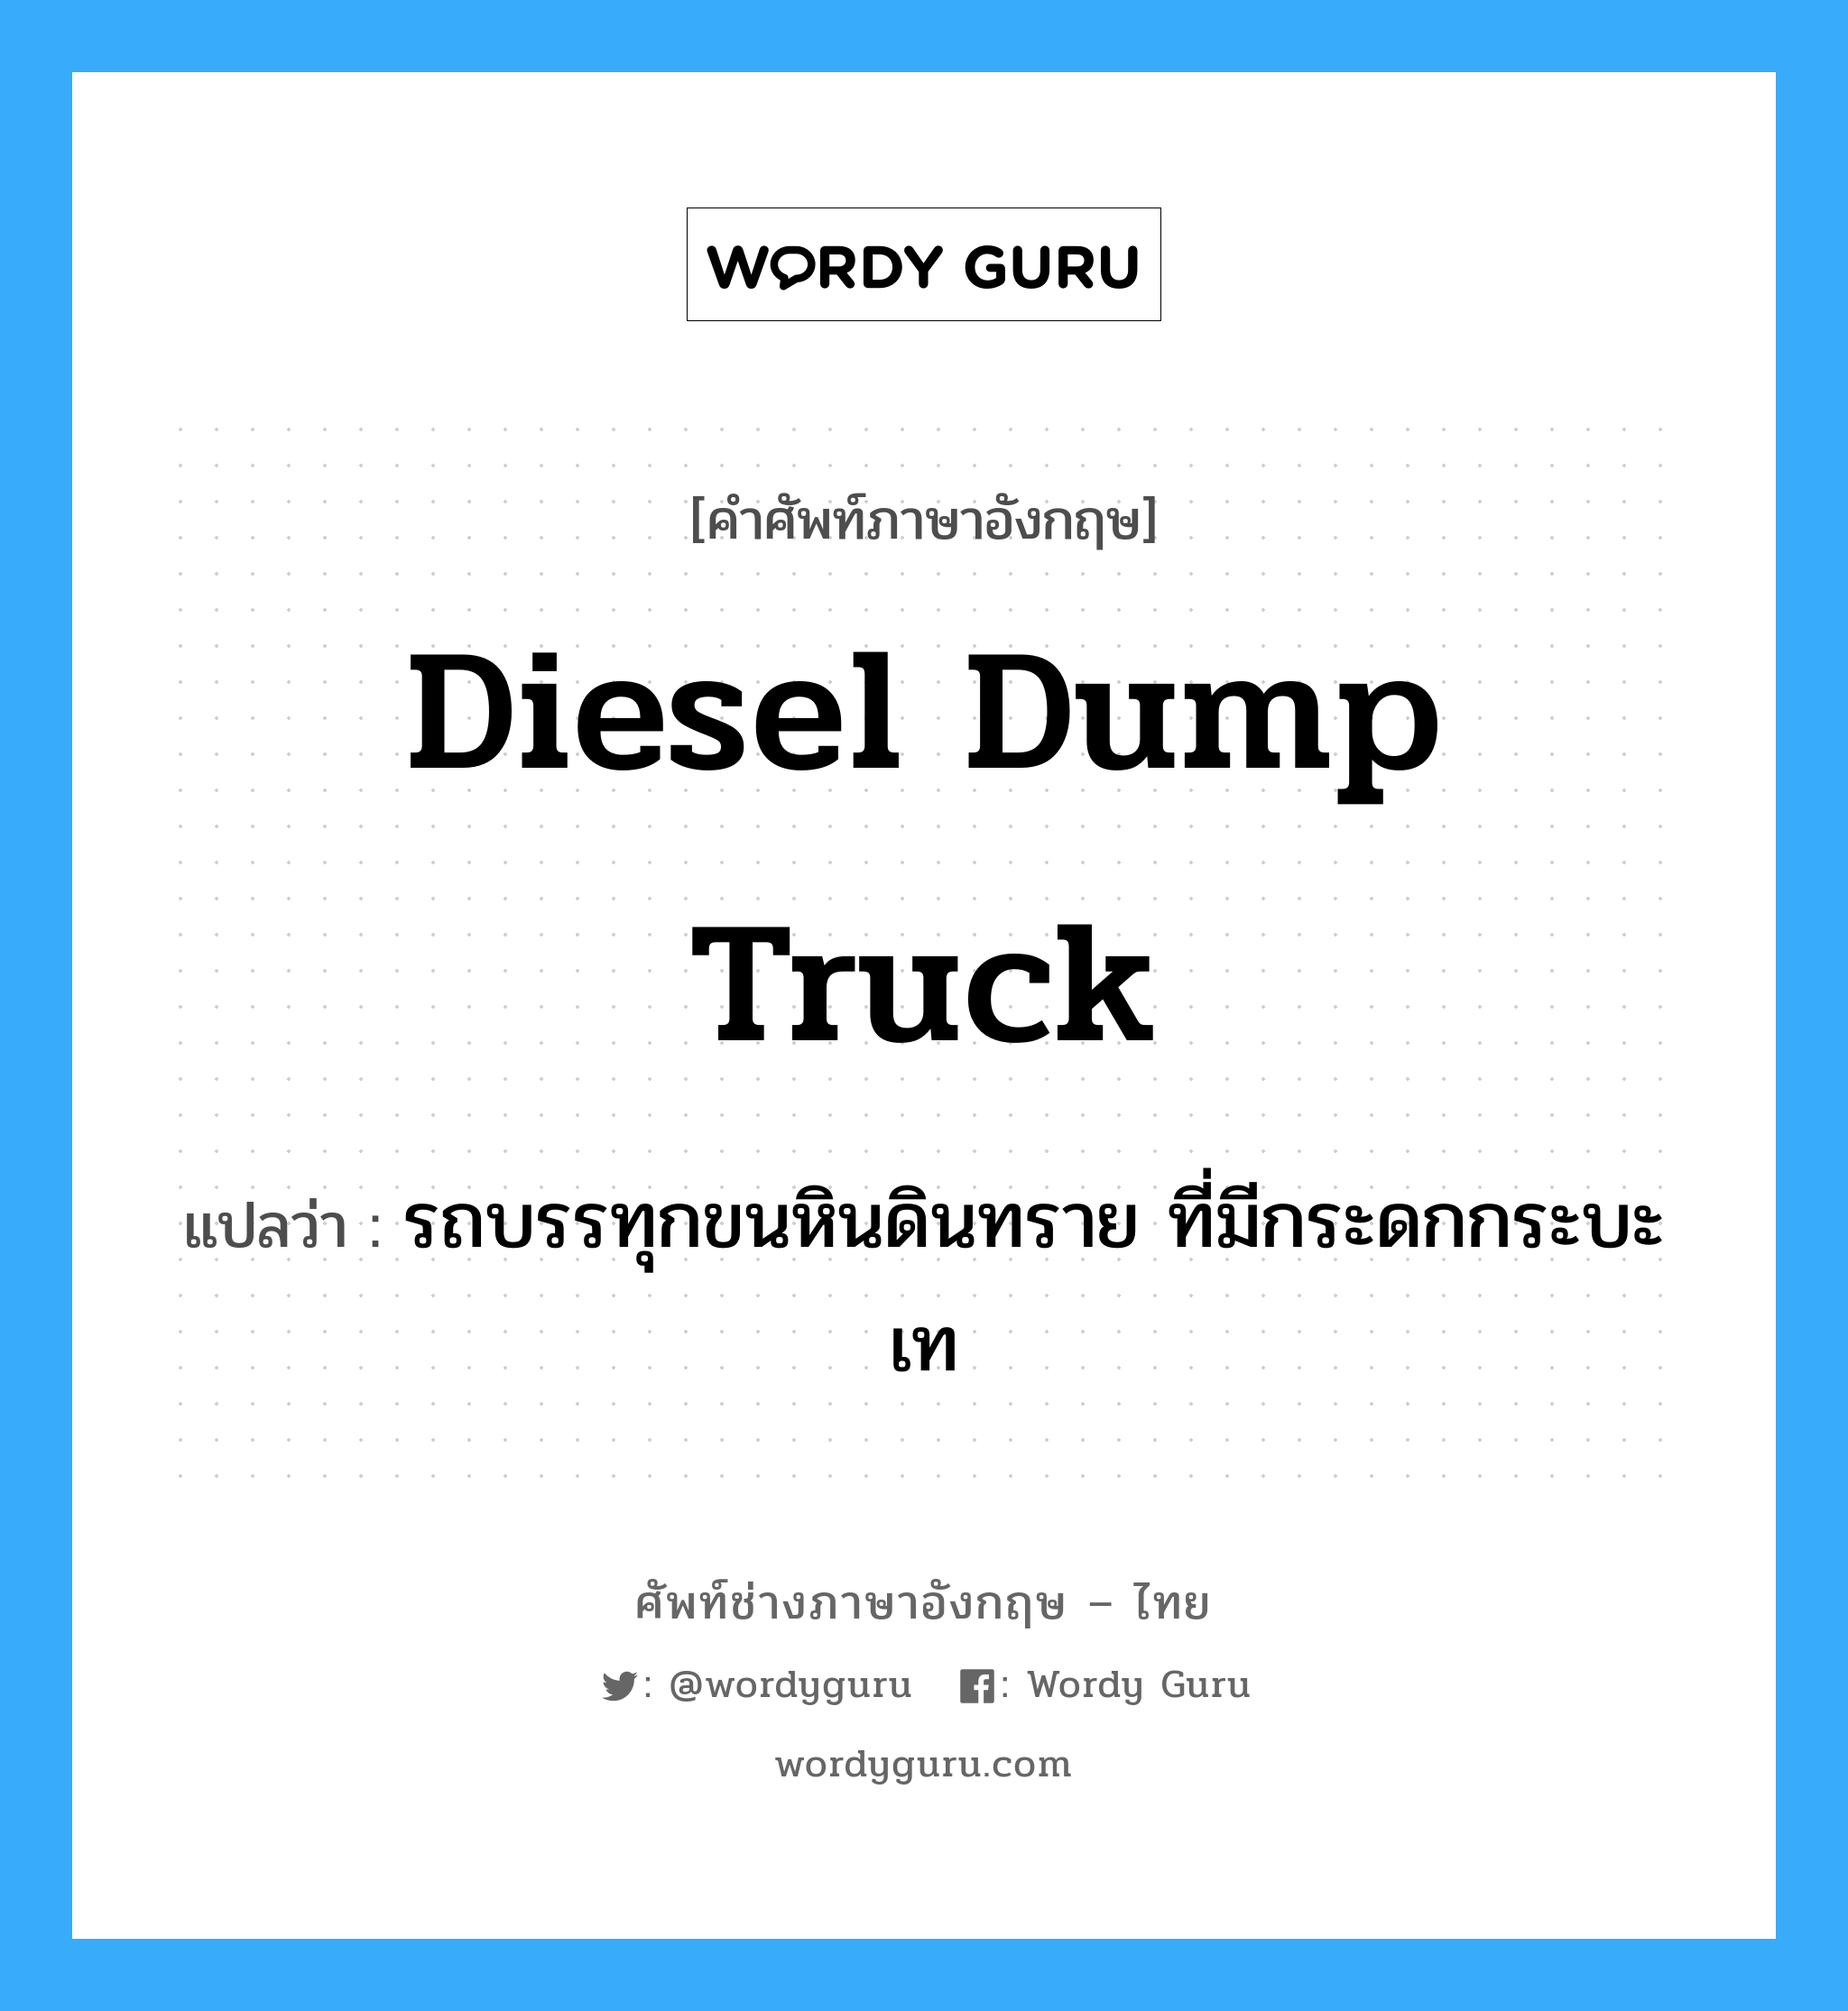 Diesel dump truck แปลว่า?, คำศัพท์ช่างภาษาอังกฤษ - ไทย Diesel dump truck คำศัพท์ภาษาอังกฤษ Diesel dump truck แปลว่า รถบรรทุกขนหินดินทราย ที่มีกระดกกระบะเท